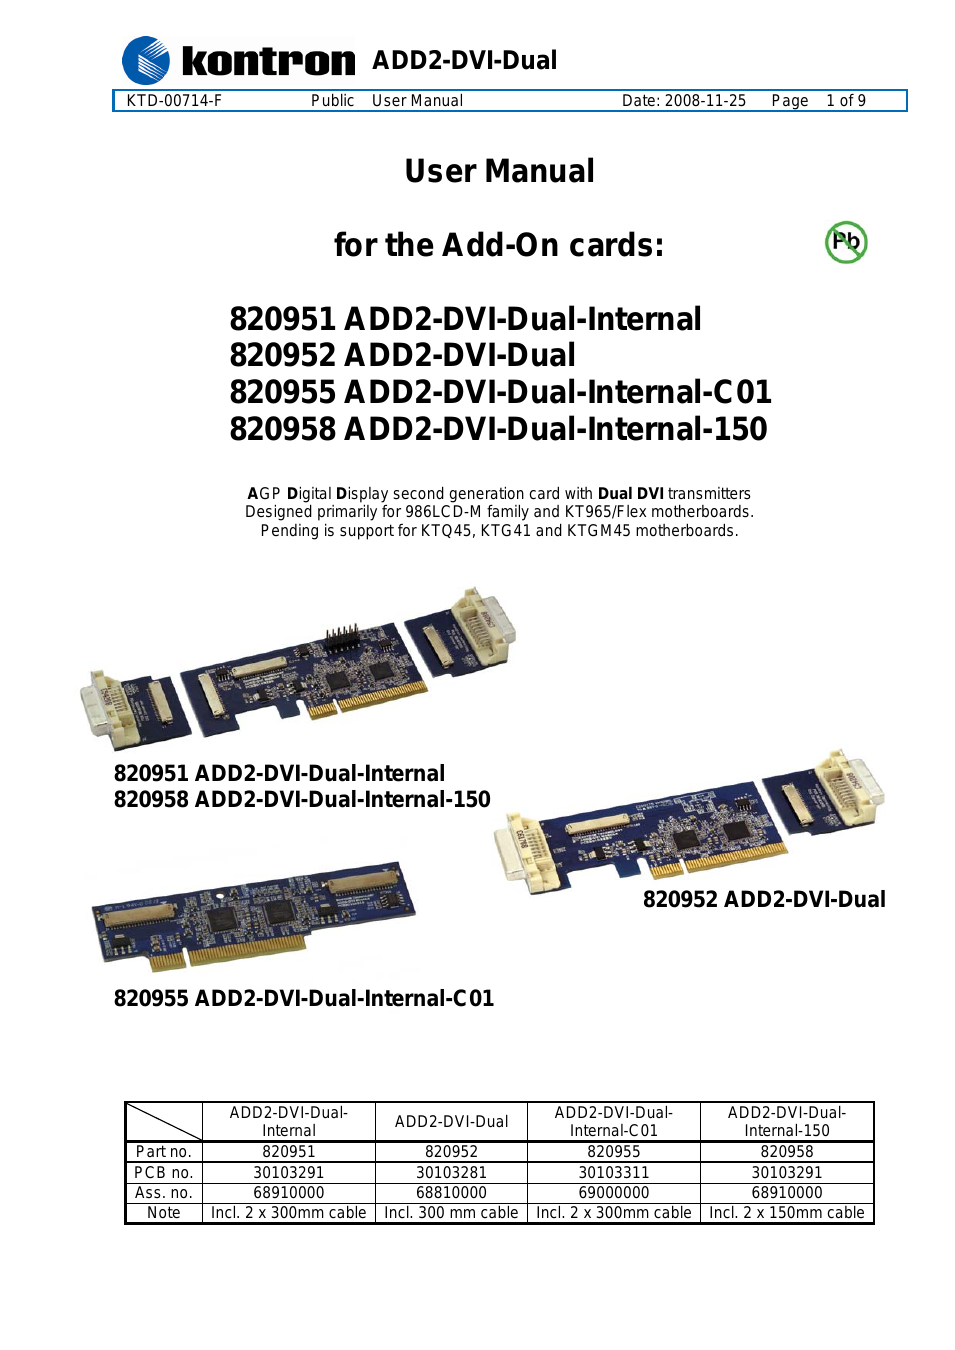 820955 ADD2-DVI-Dual-Internal-C01